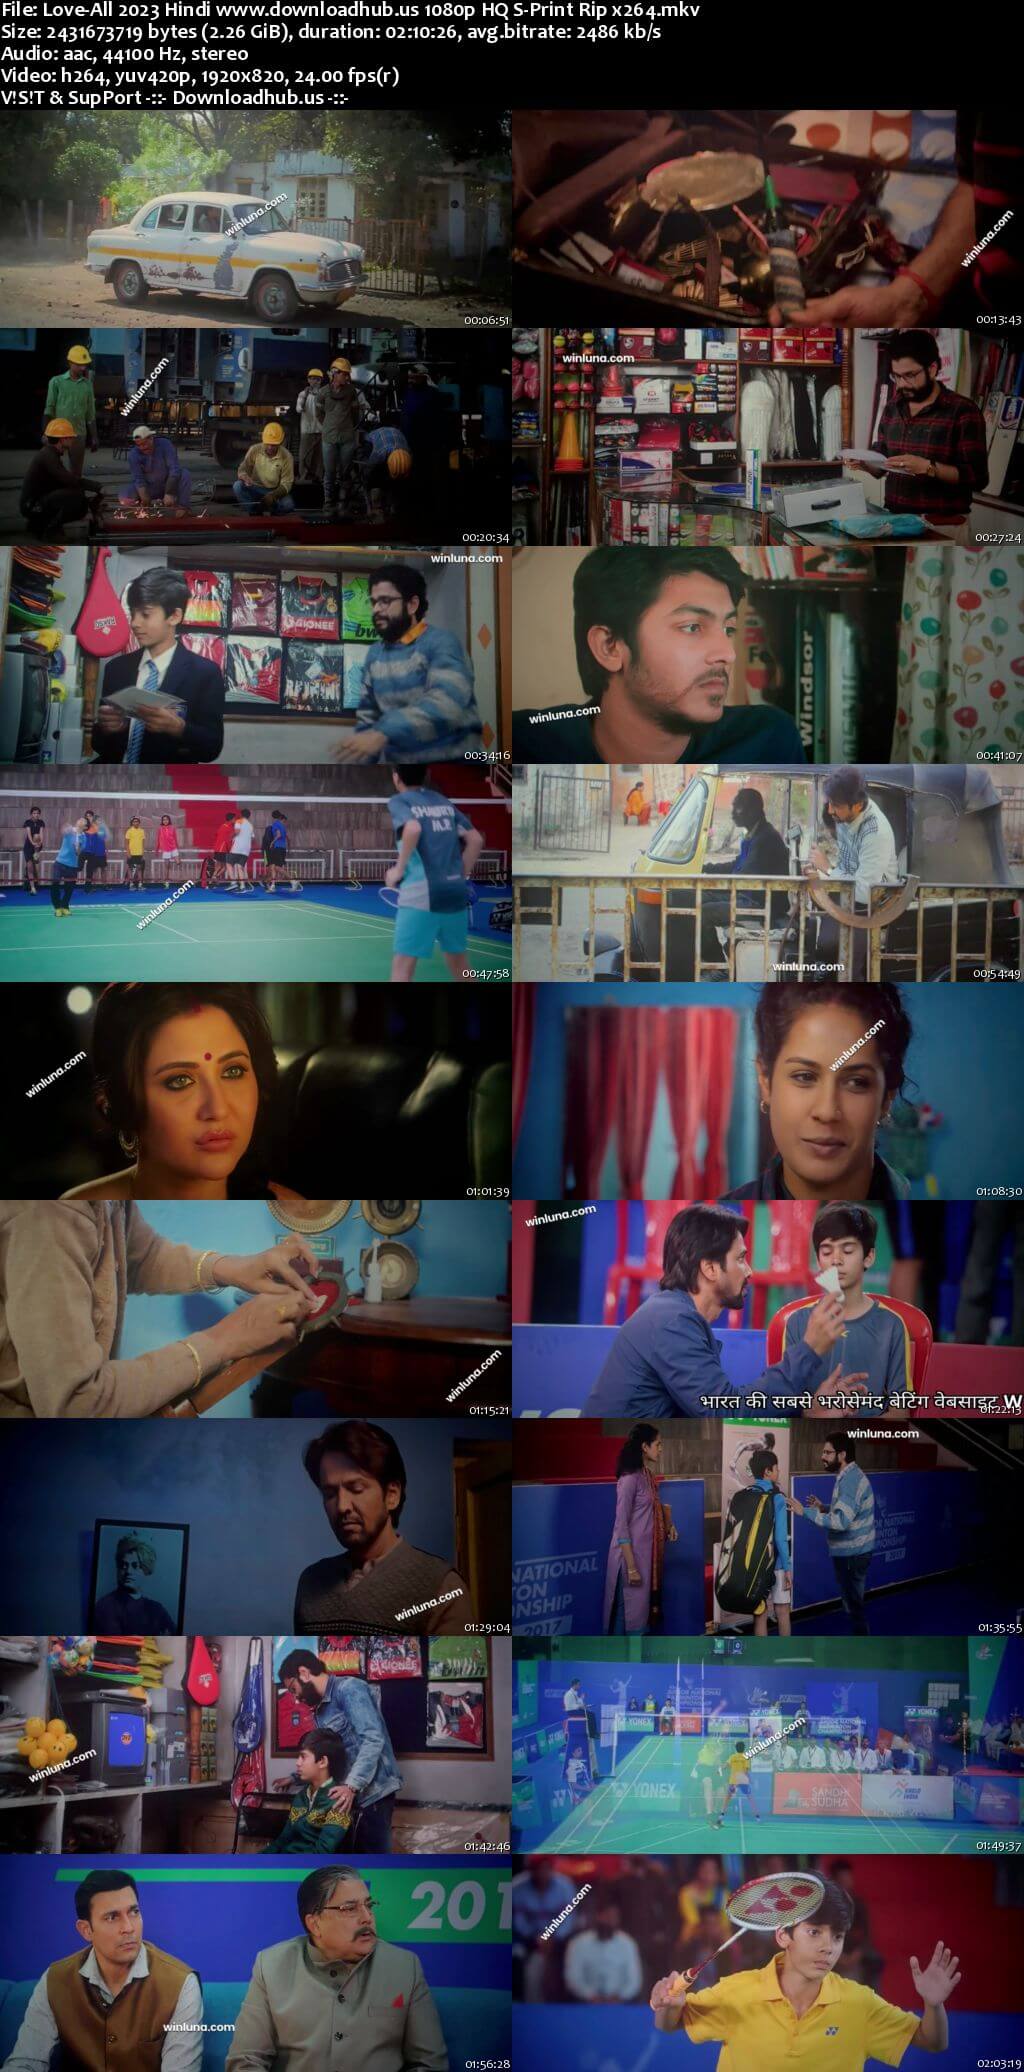 Love-All 2023 Hindi Movie 1080p 720p 480p HQ S-Print Rip x264